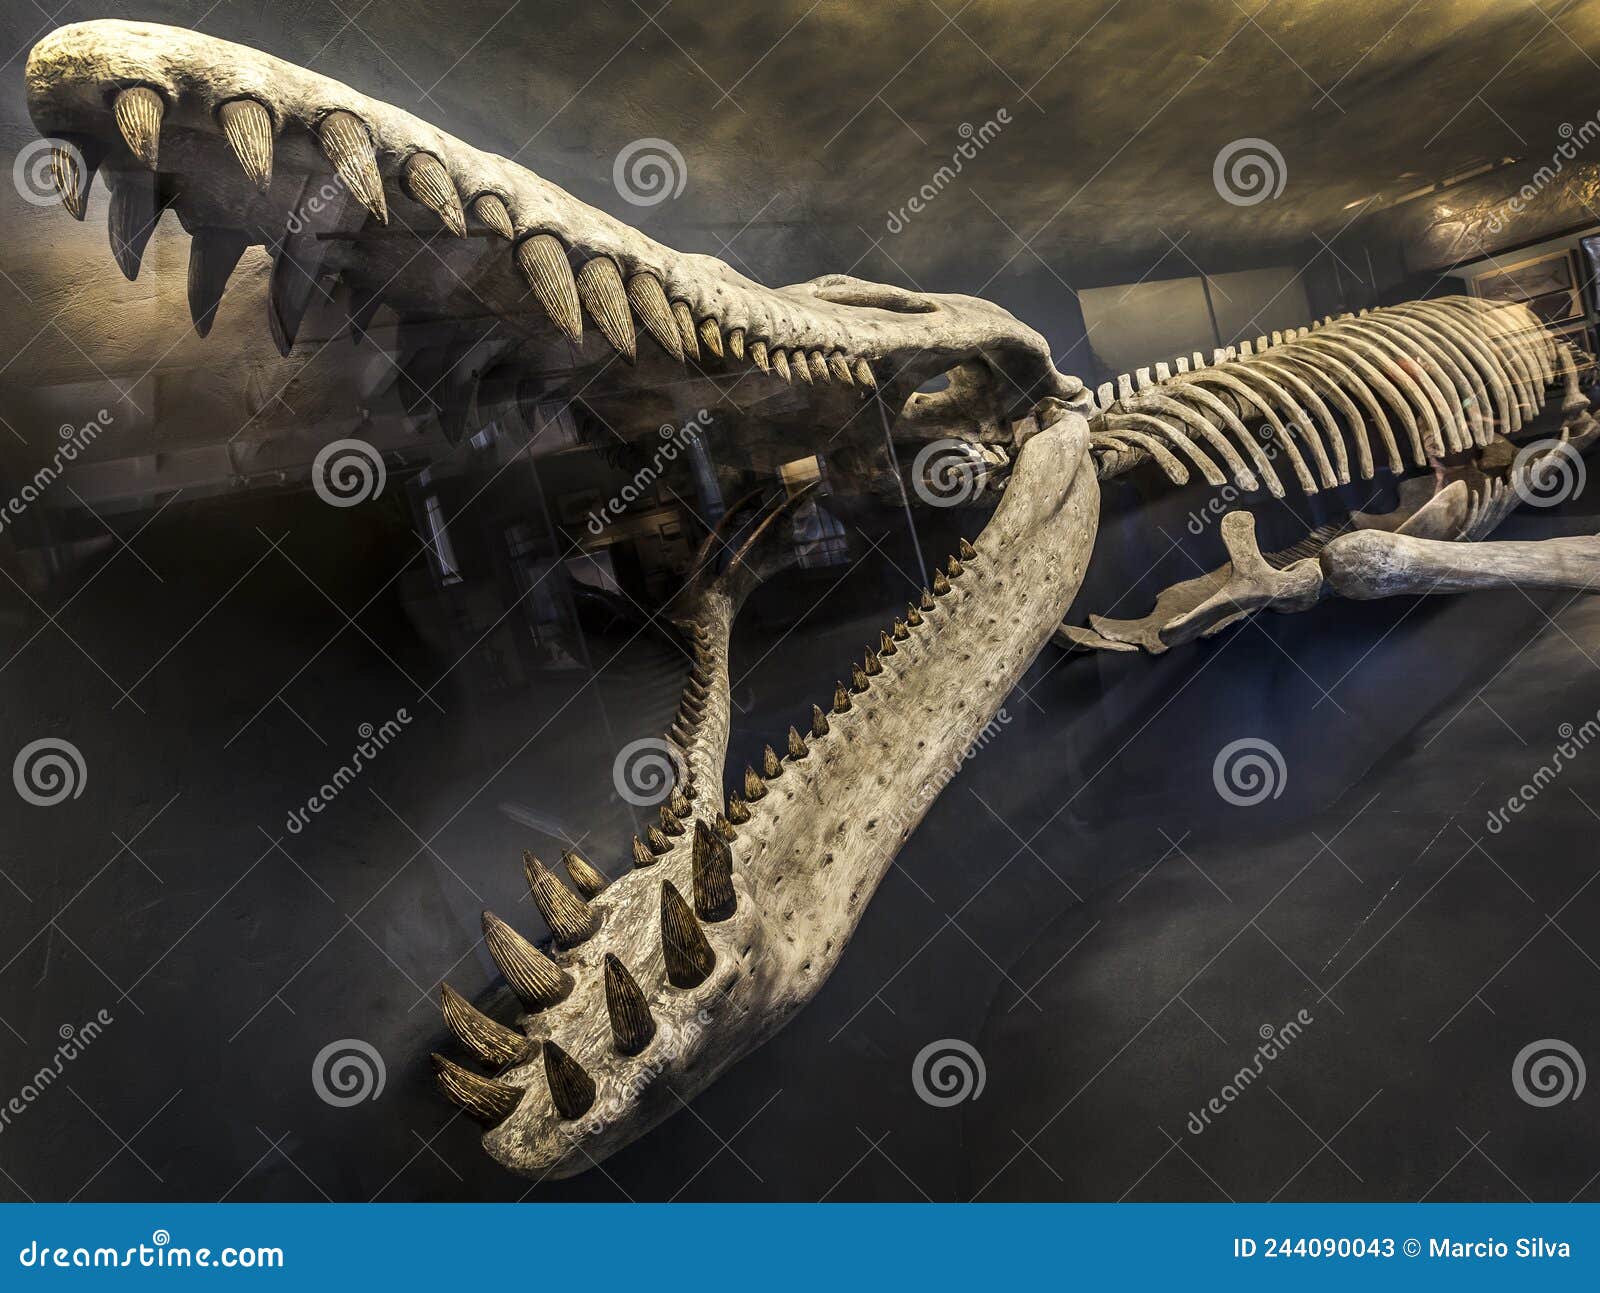 半水生鲸化石的发现：早期鲸如何从陆地走向海洋